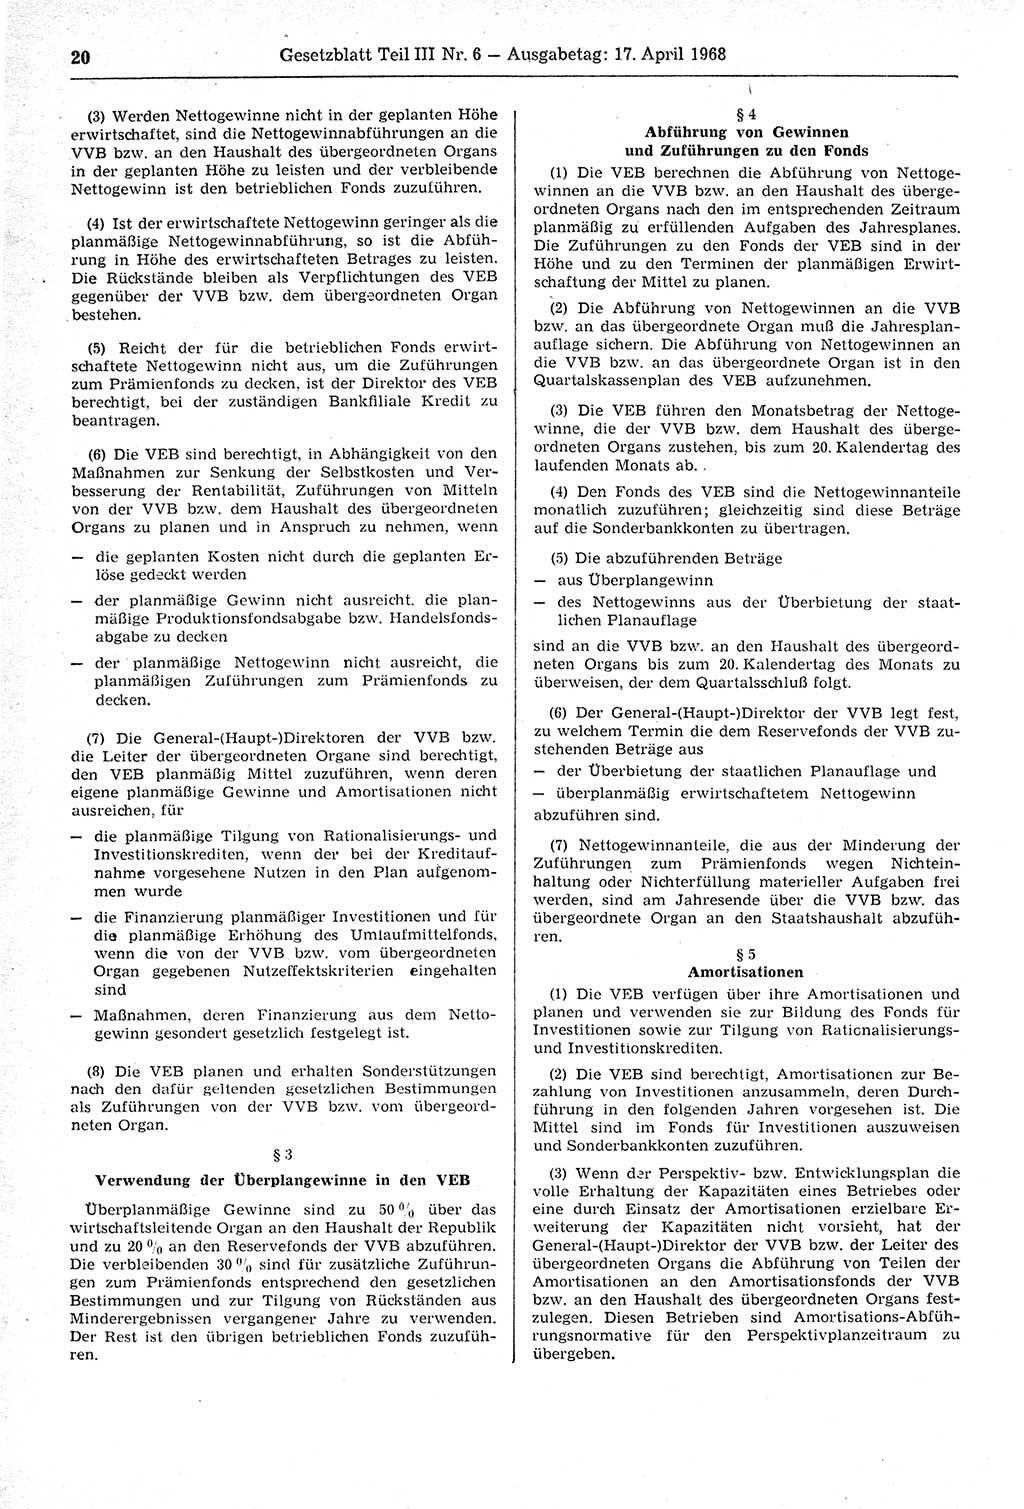 Gesetzblatt (GBl.) der Deutschen Demokratischen Republik (DDR) Teil ⅠⅠⅠ 1968, Seite 20 (GBl. DDR ⅠⅠⅠ 1968, S. 20)